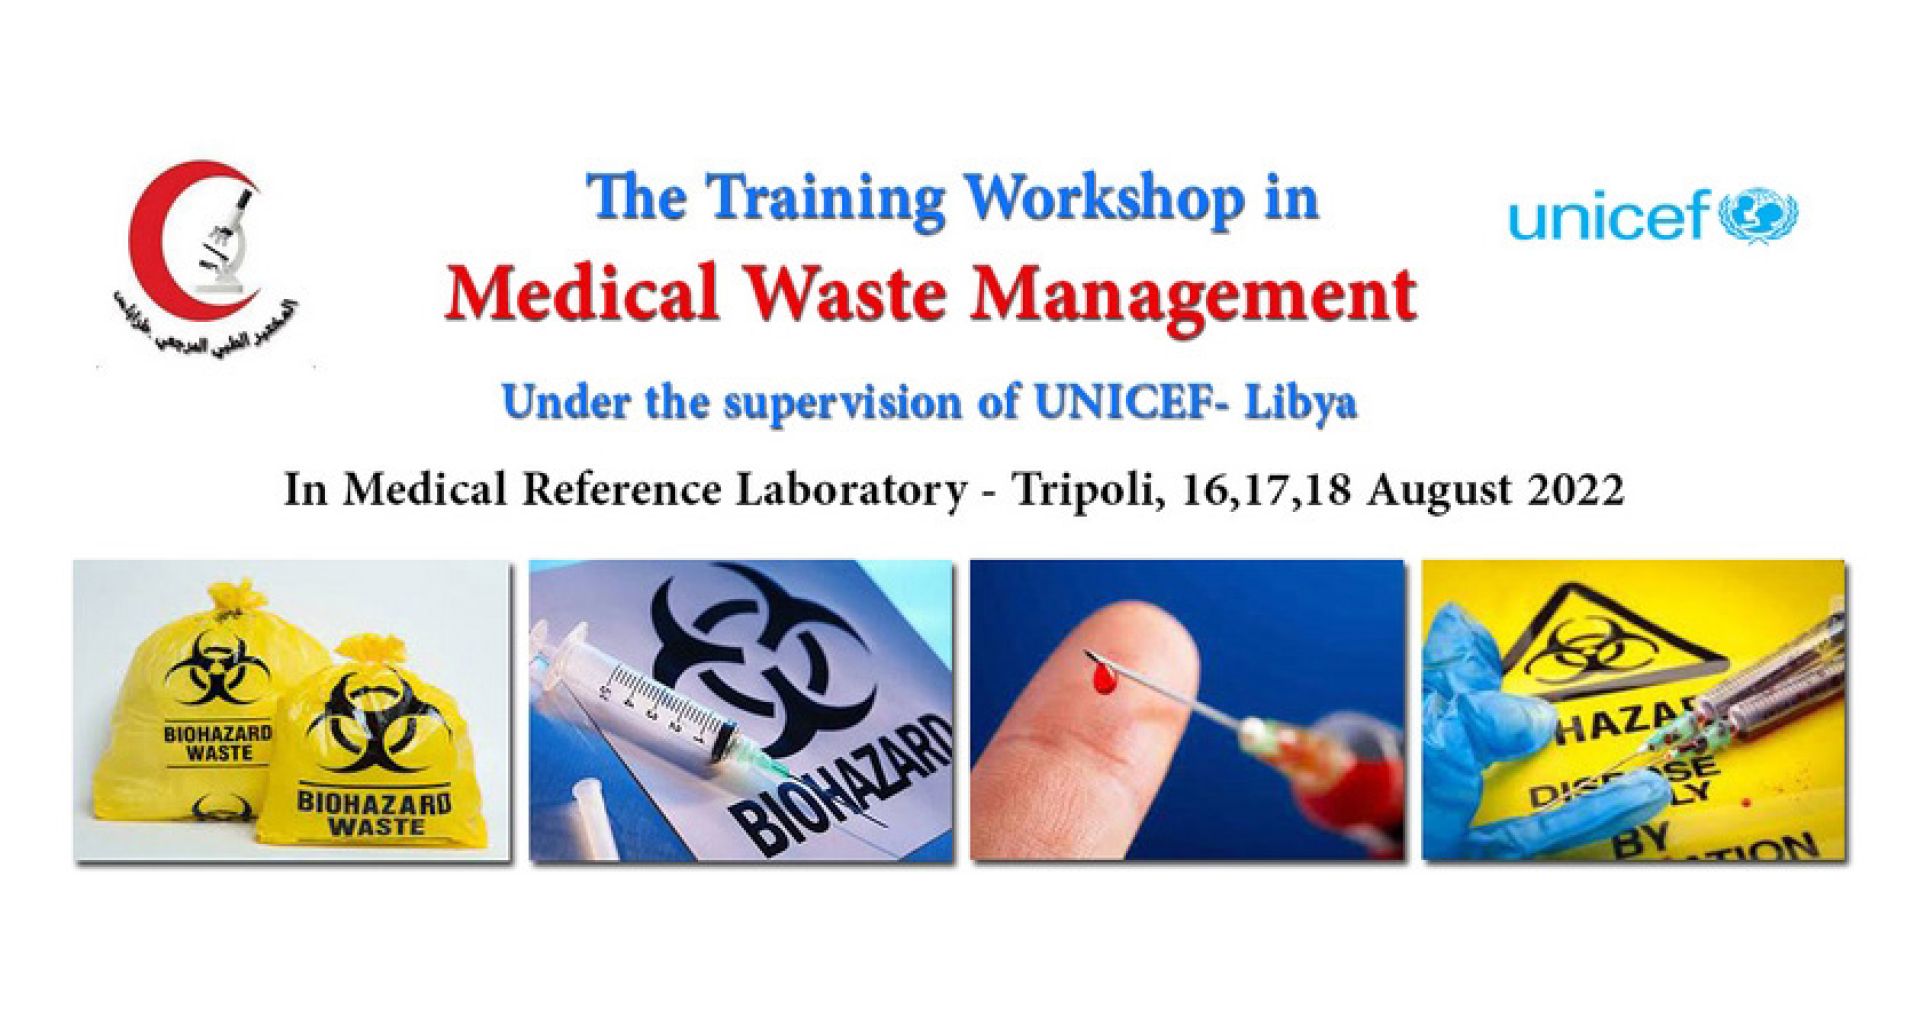 ورشة تدريبية مكتفة في مجال إدارة النفايات الطبية للعاملين بالمختبر المرجعي طرابلس